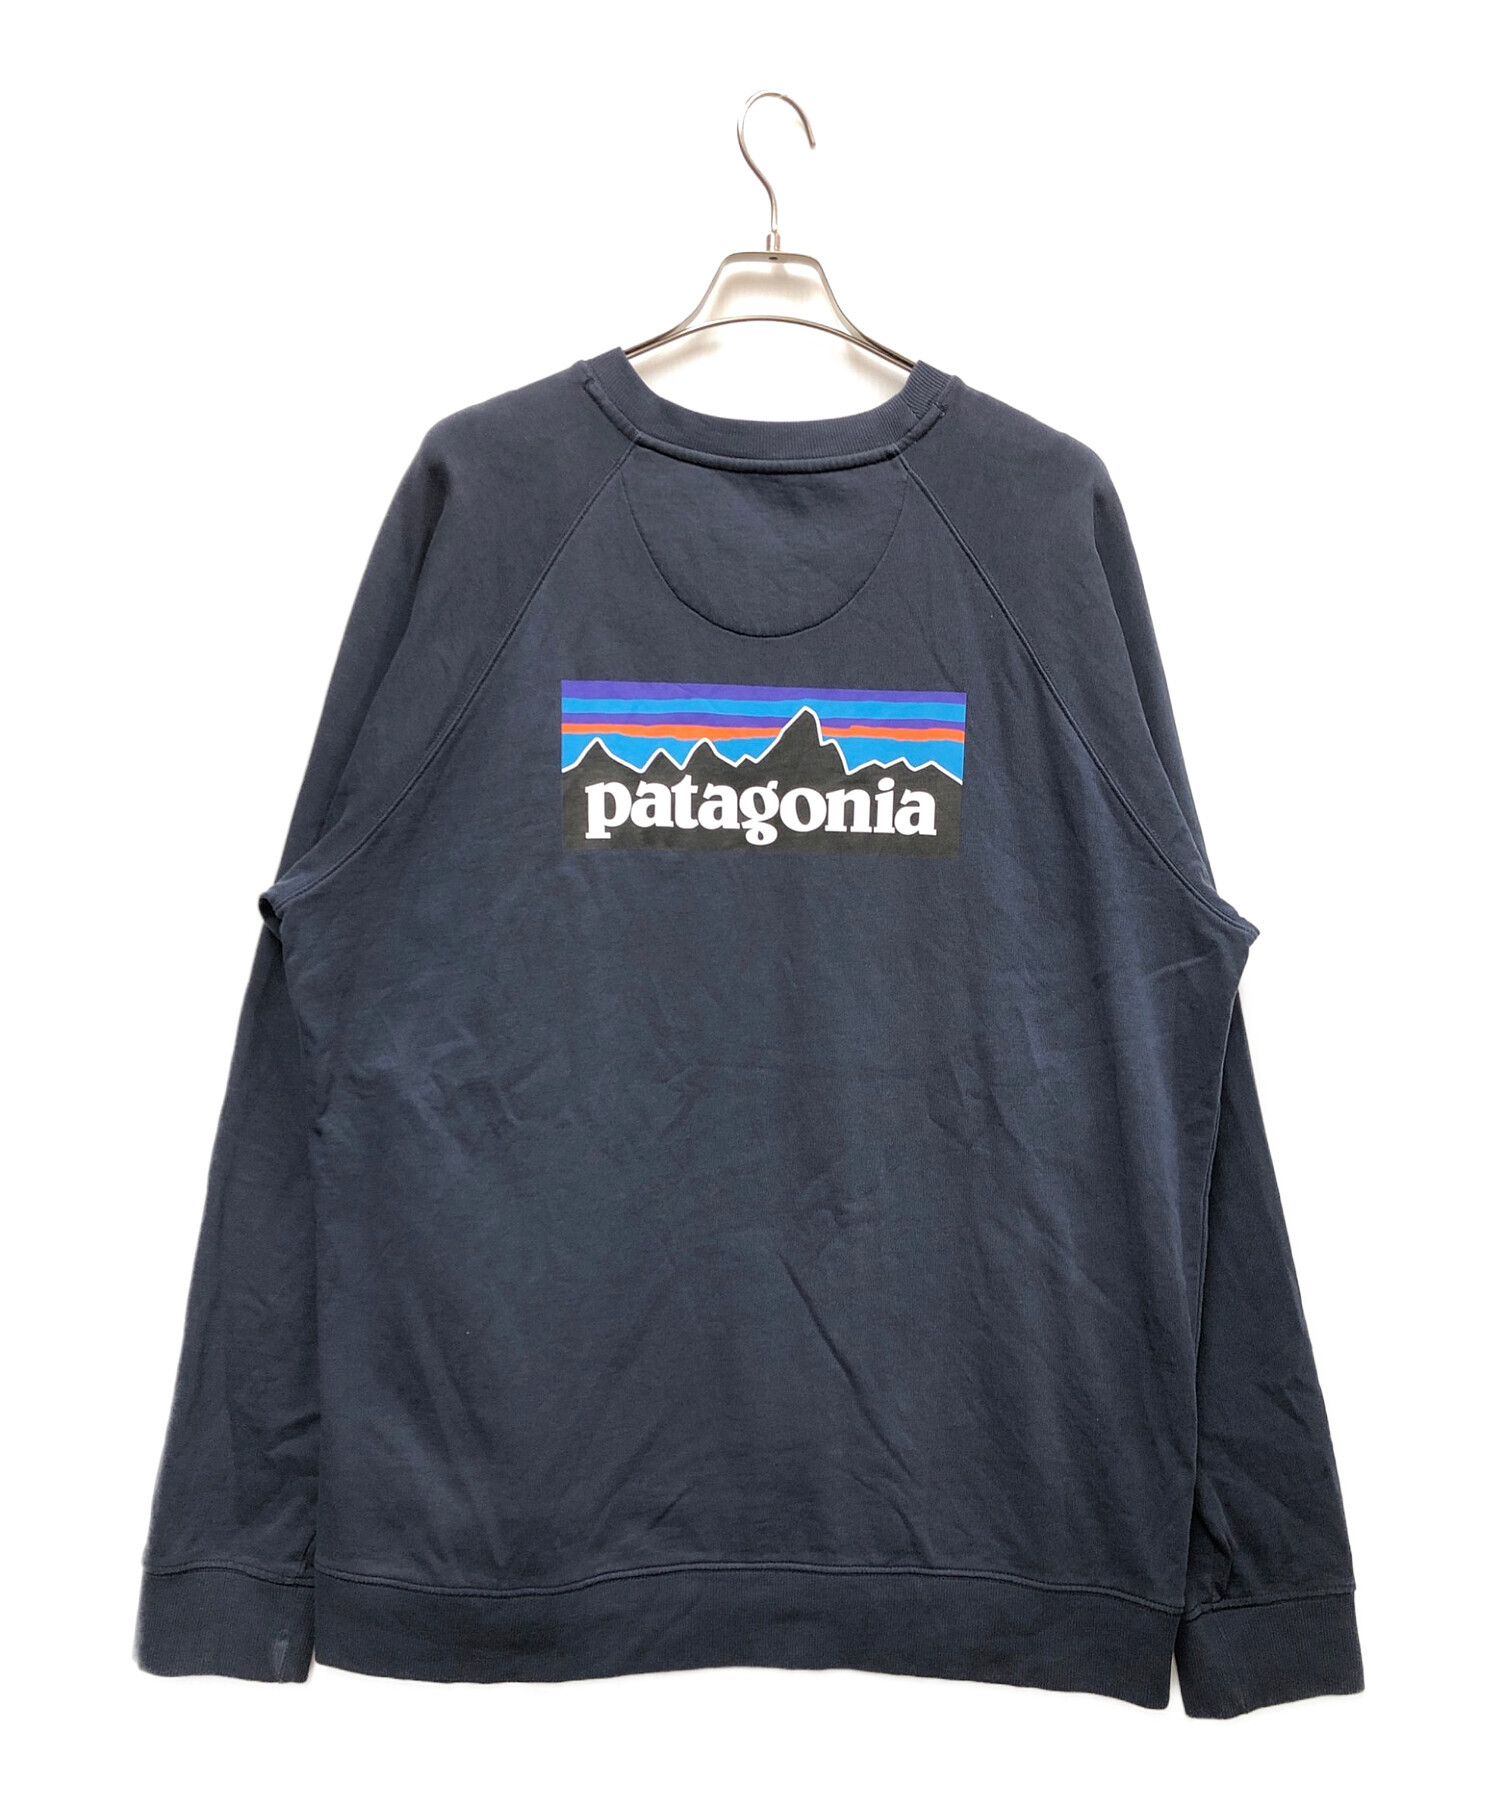 Patagonia (パタゴニア) スウェット ネイビー サイズ:XL